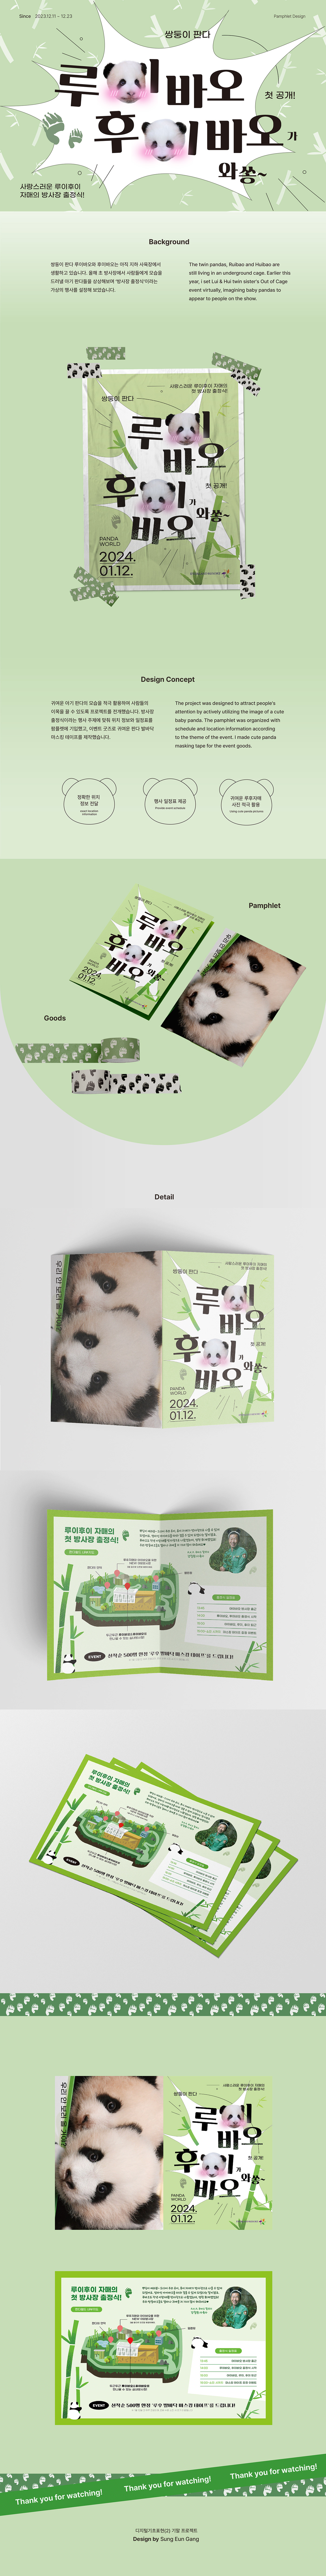 pamphlet pamphlet design poster design Panda  Identity Design